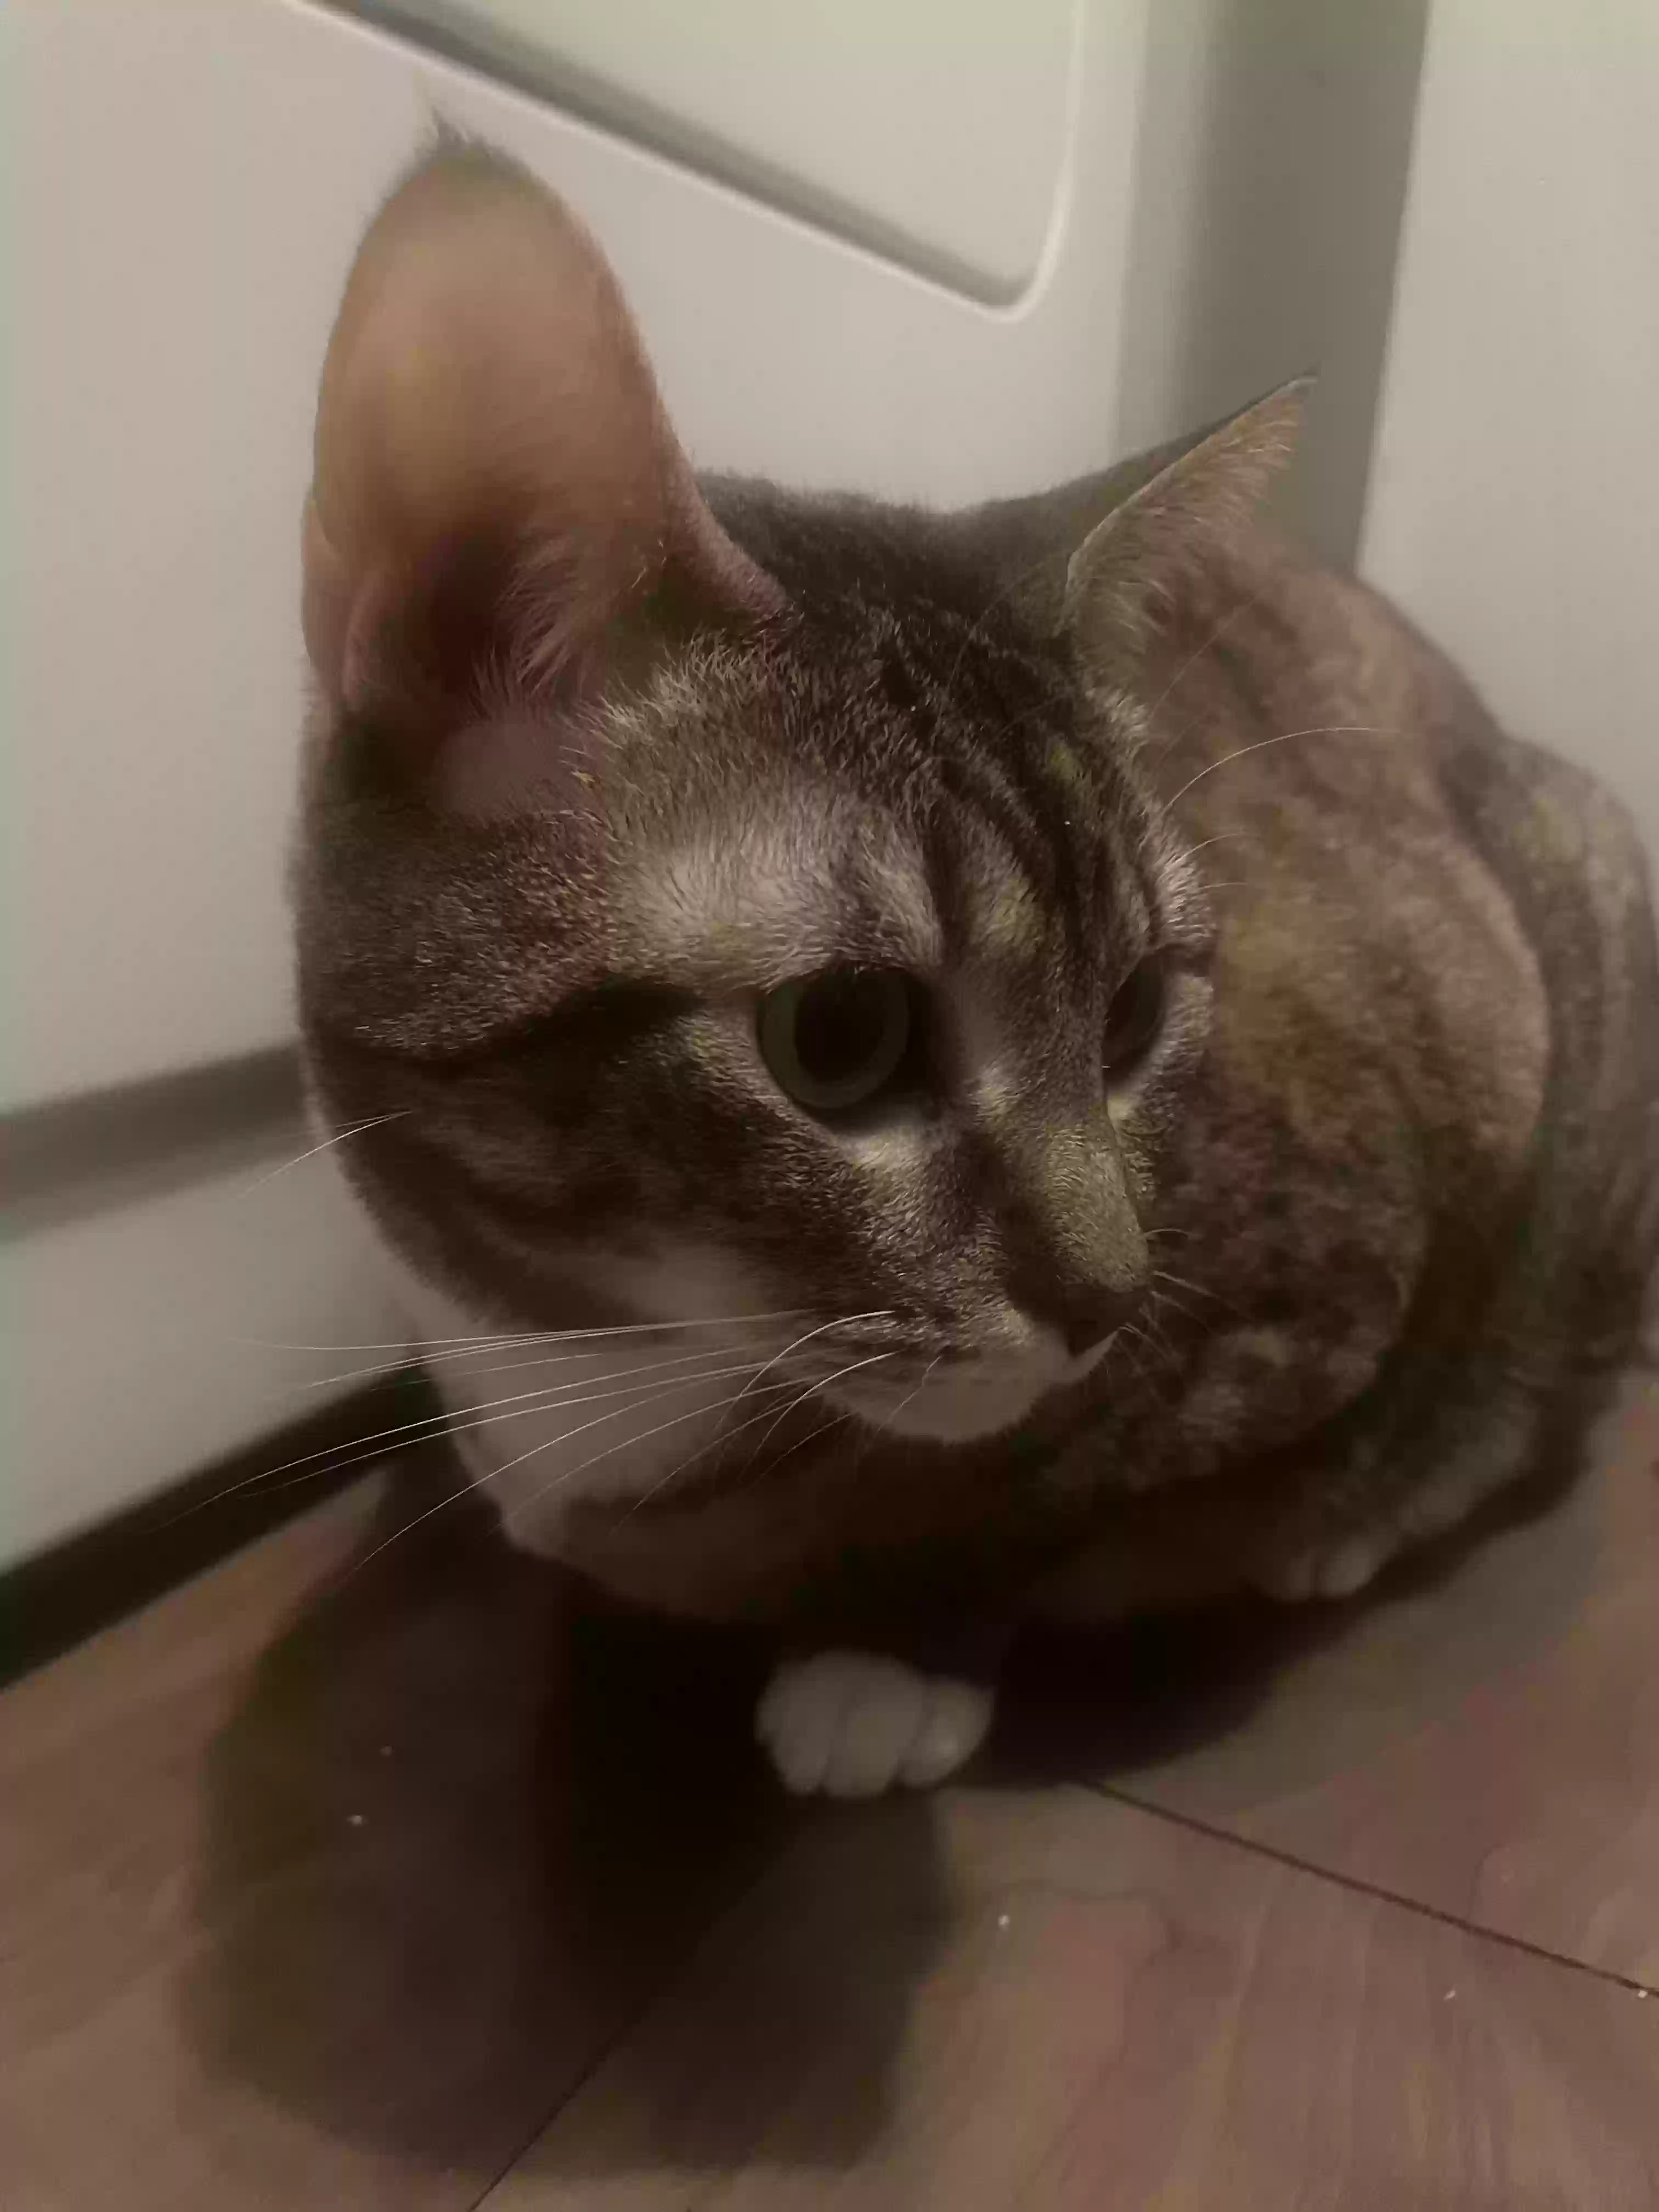 adoptable Cat in Atlanta,GA named Nefertiti Maxie